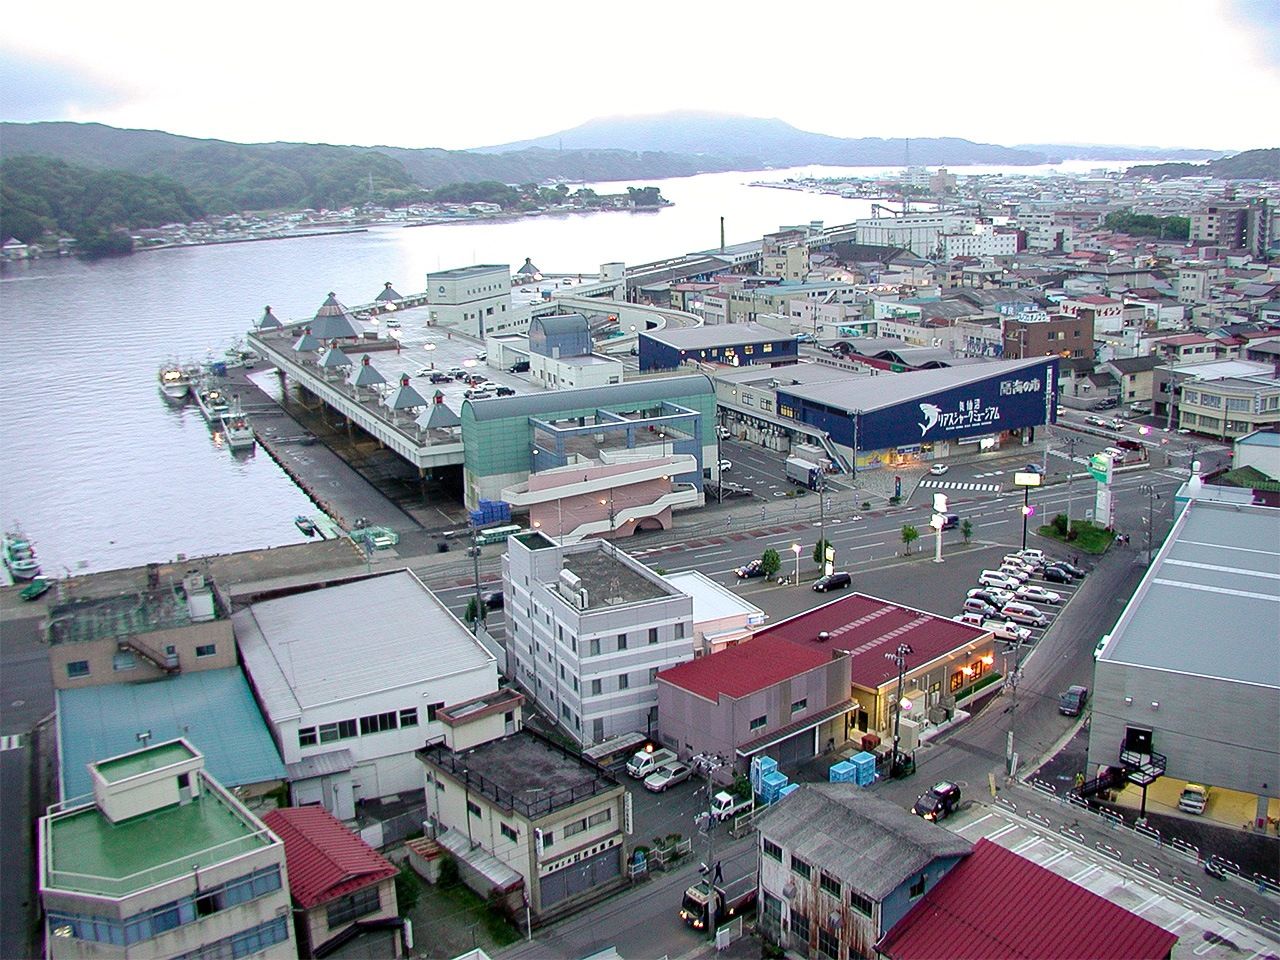 الواجهة المائية لمينامي كيسينّوما قبل كارثة التسونامي.